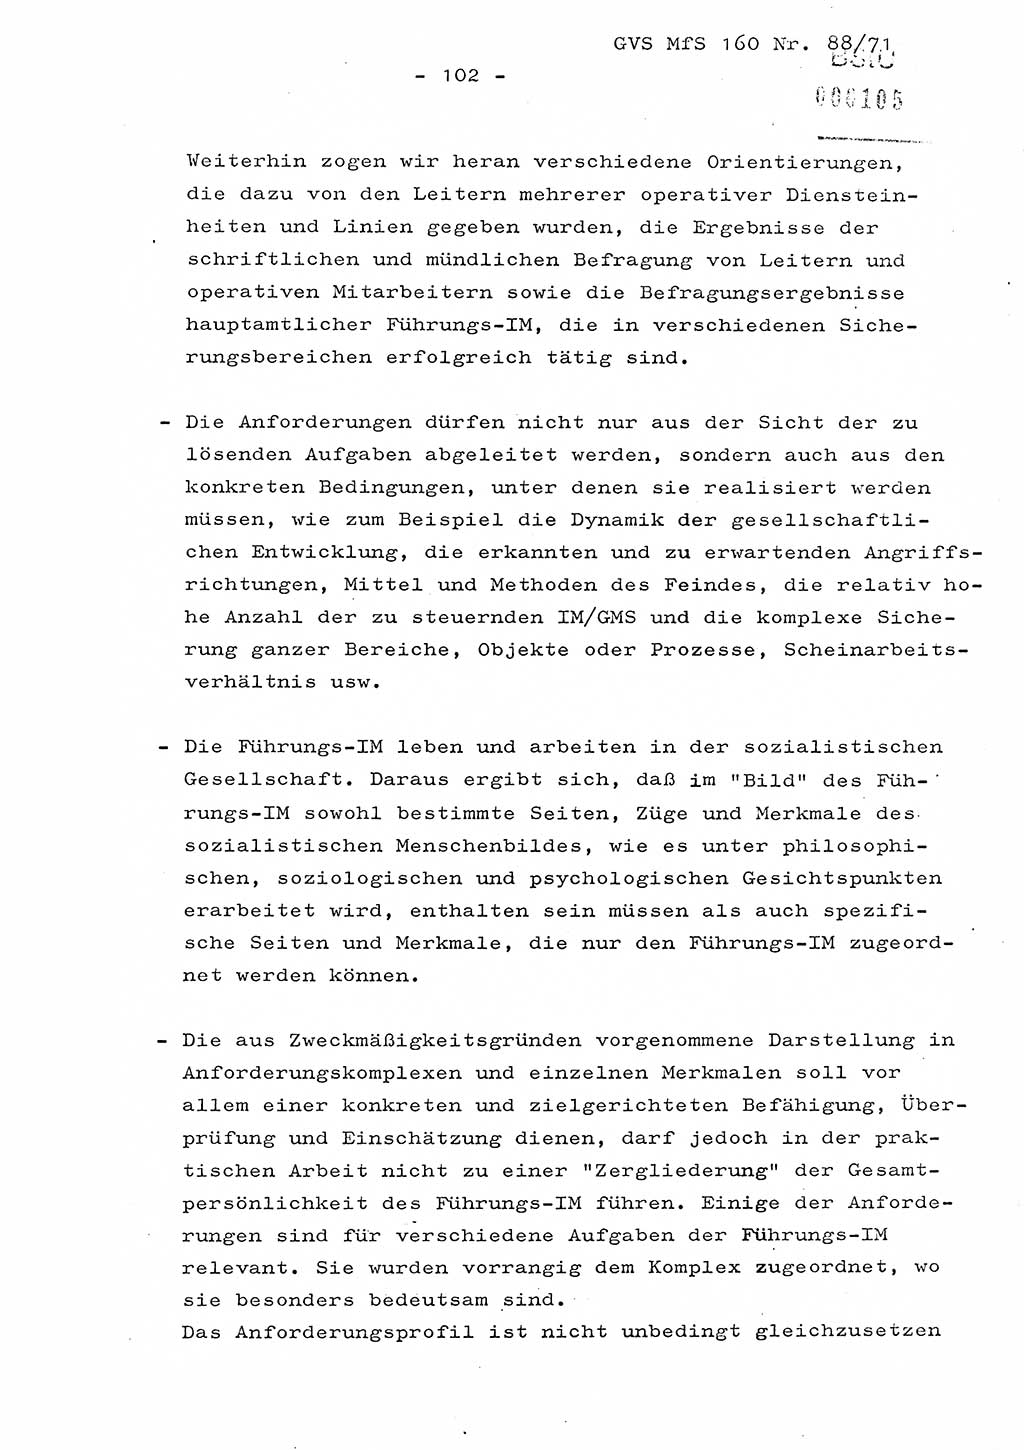 Dissertation Oberstleutnant Josef Schwarz (BV Schwerin), Major Fritz Amm (JHS), Hauptmann Peter Gräßler (JHS), Ministerium für Staatssicherheit (MfS) [Deutsche Demokratische Republik (DDR)], Juristische Hochschule (JHS), Geheime Verschlußsache (GVS) 160-88/71, Potsdam 1972, Seite 102 (Diss. MfS DDR JHS GVS 160-88/71 1972, S. 102)